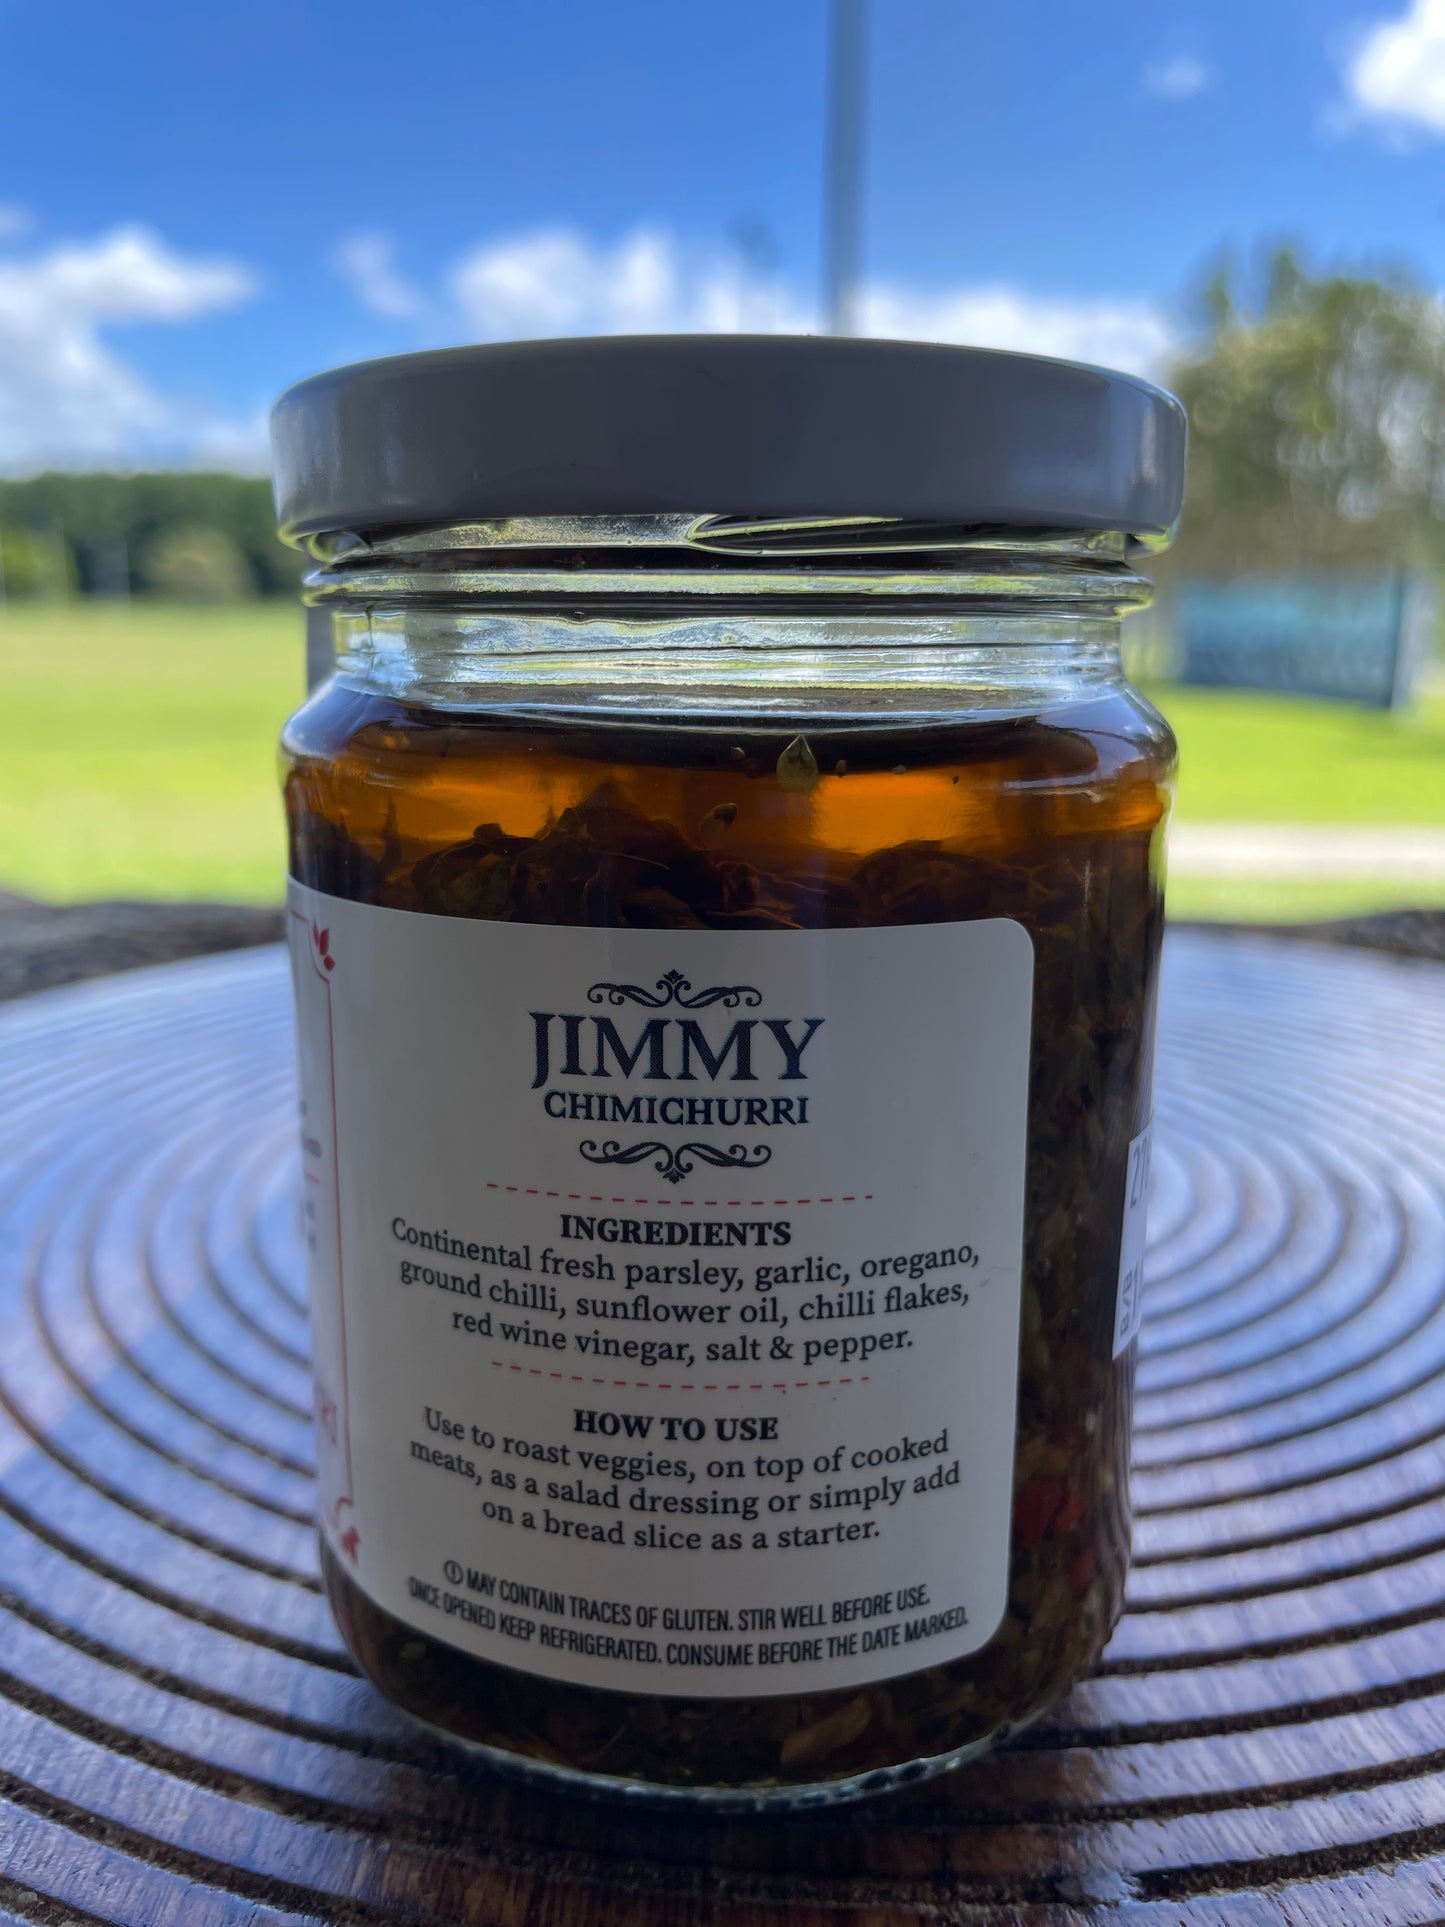 Jimmy chimichurri Jar Hot 200grs